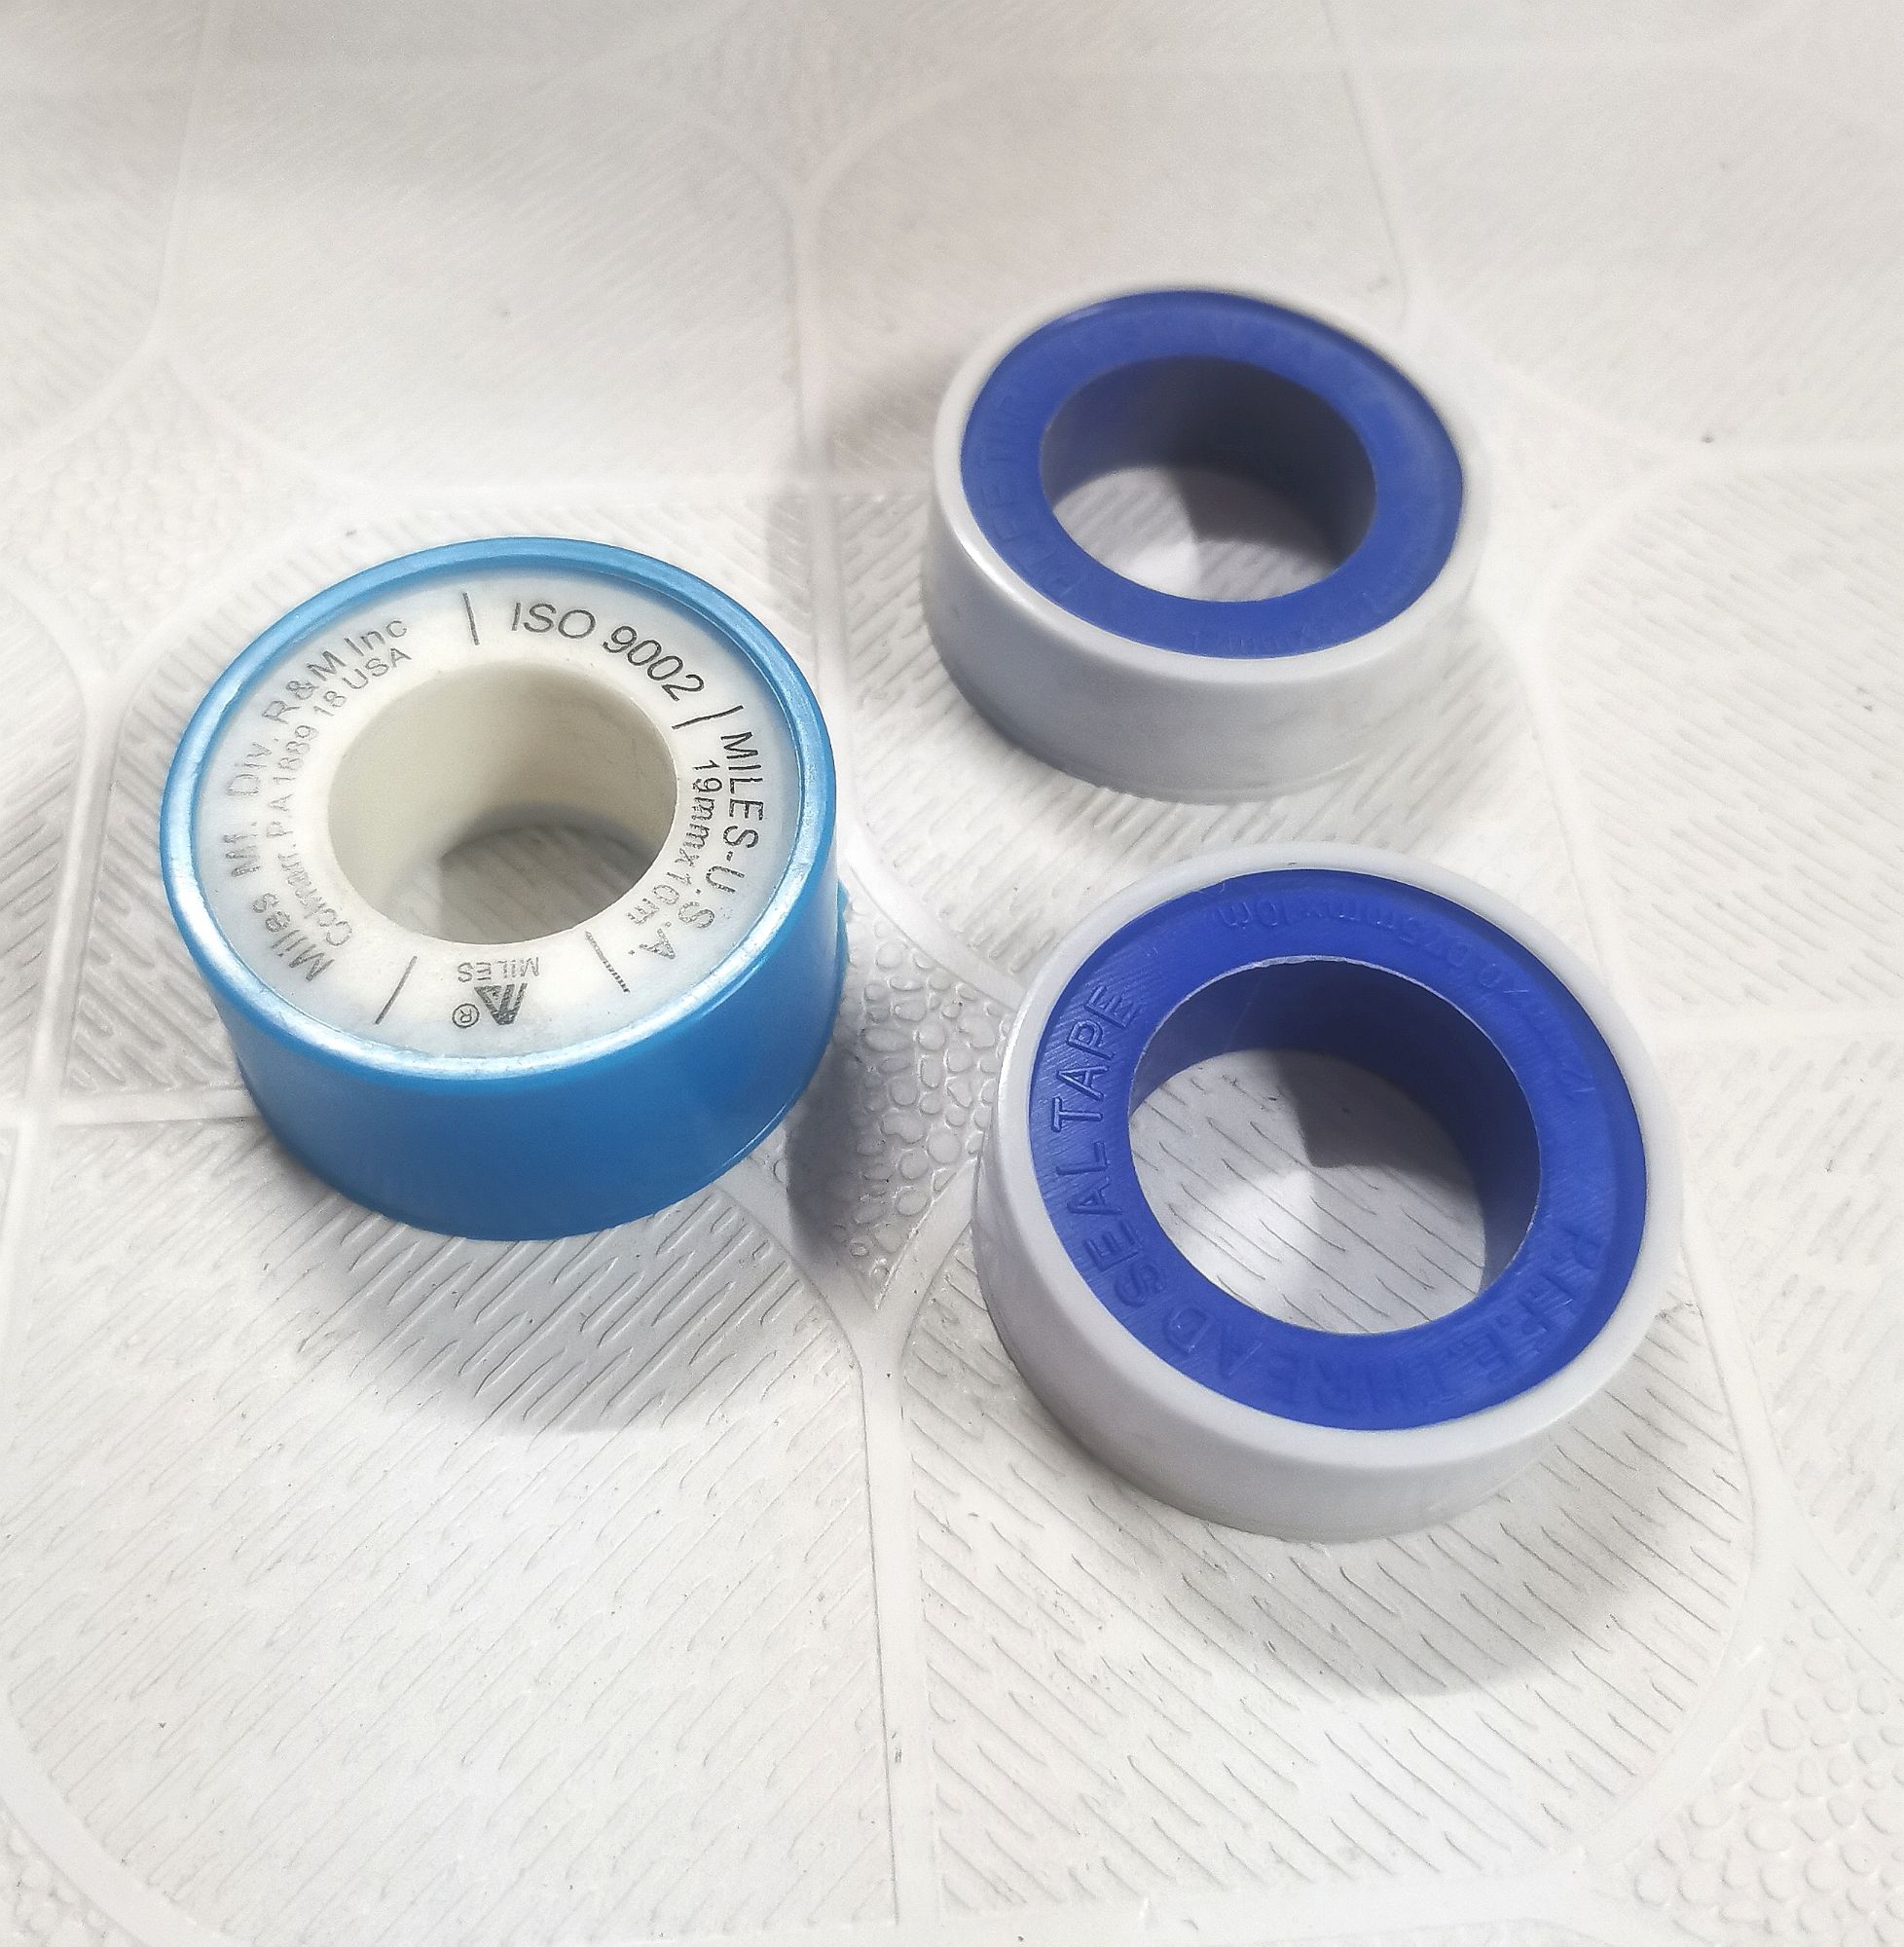 Magical Glue Self-adhesive Tape Strap Hoop Loop Strap Velcro